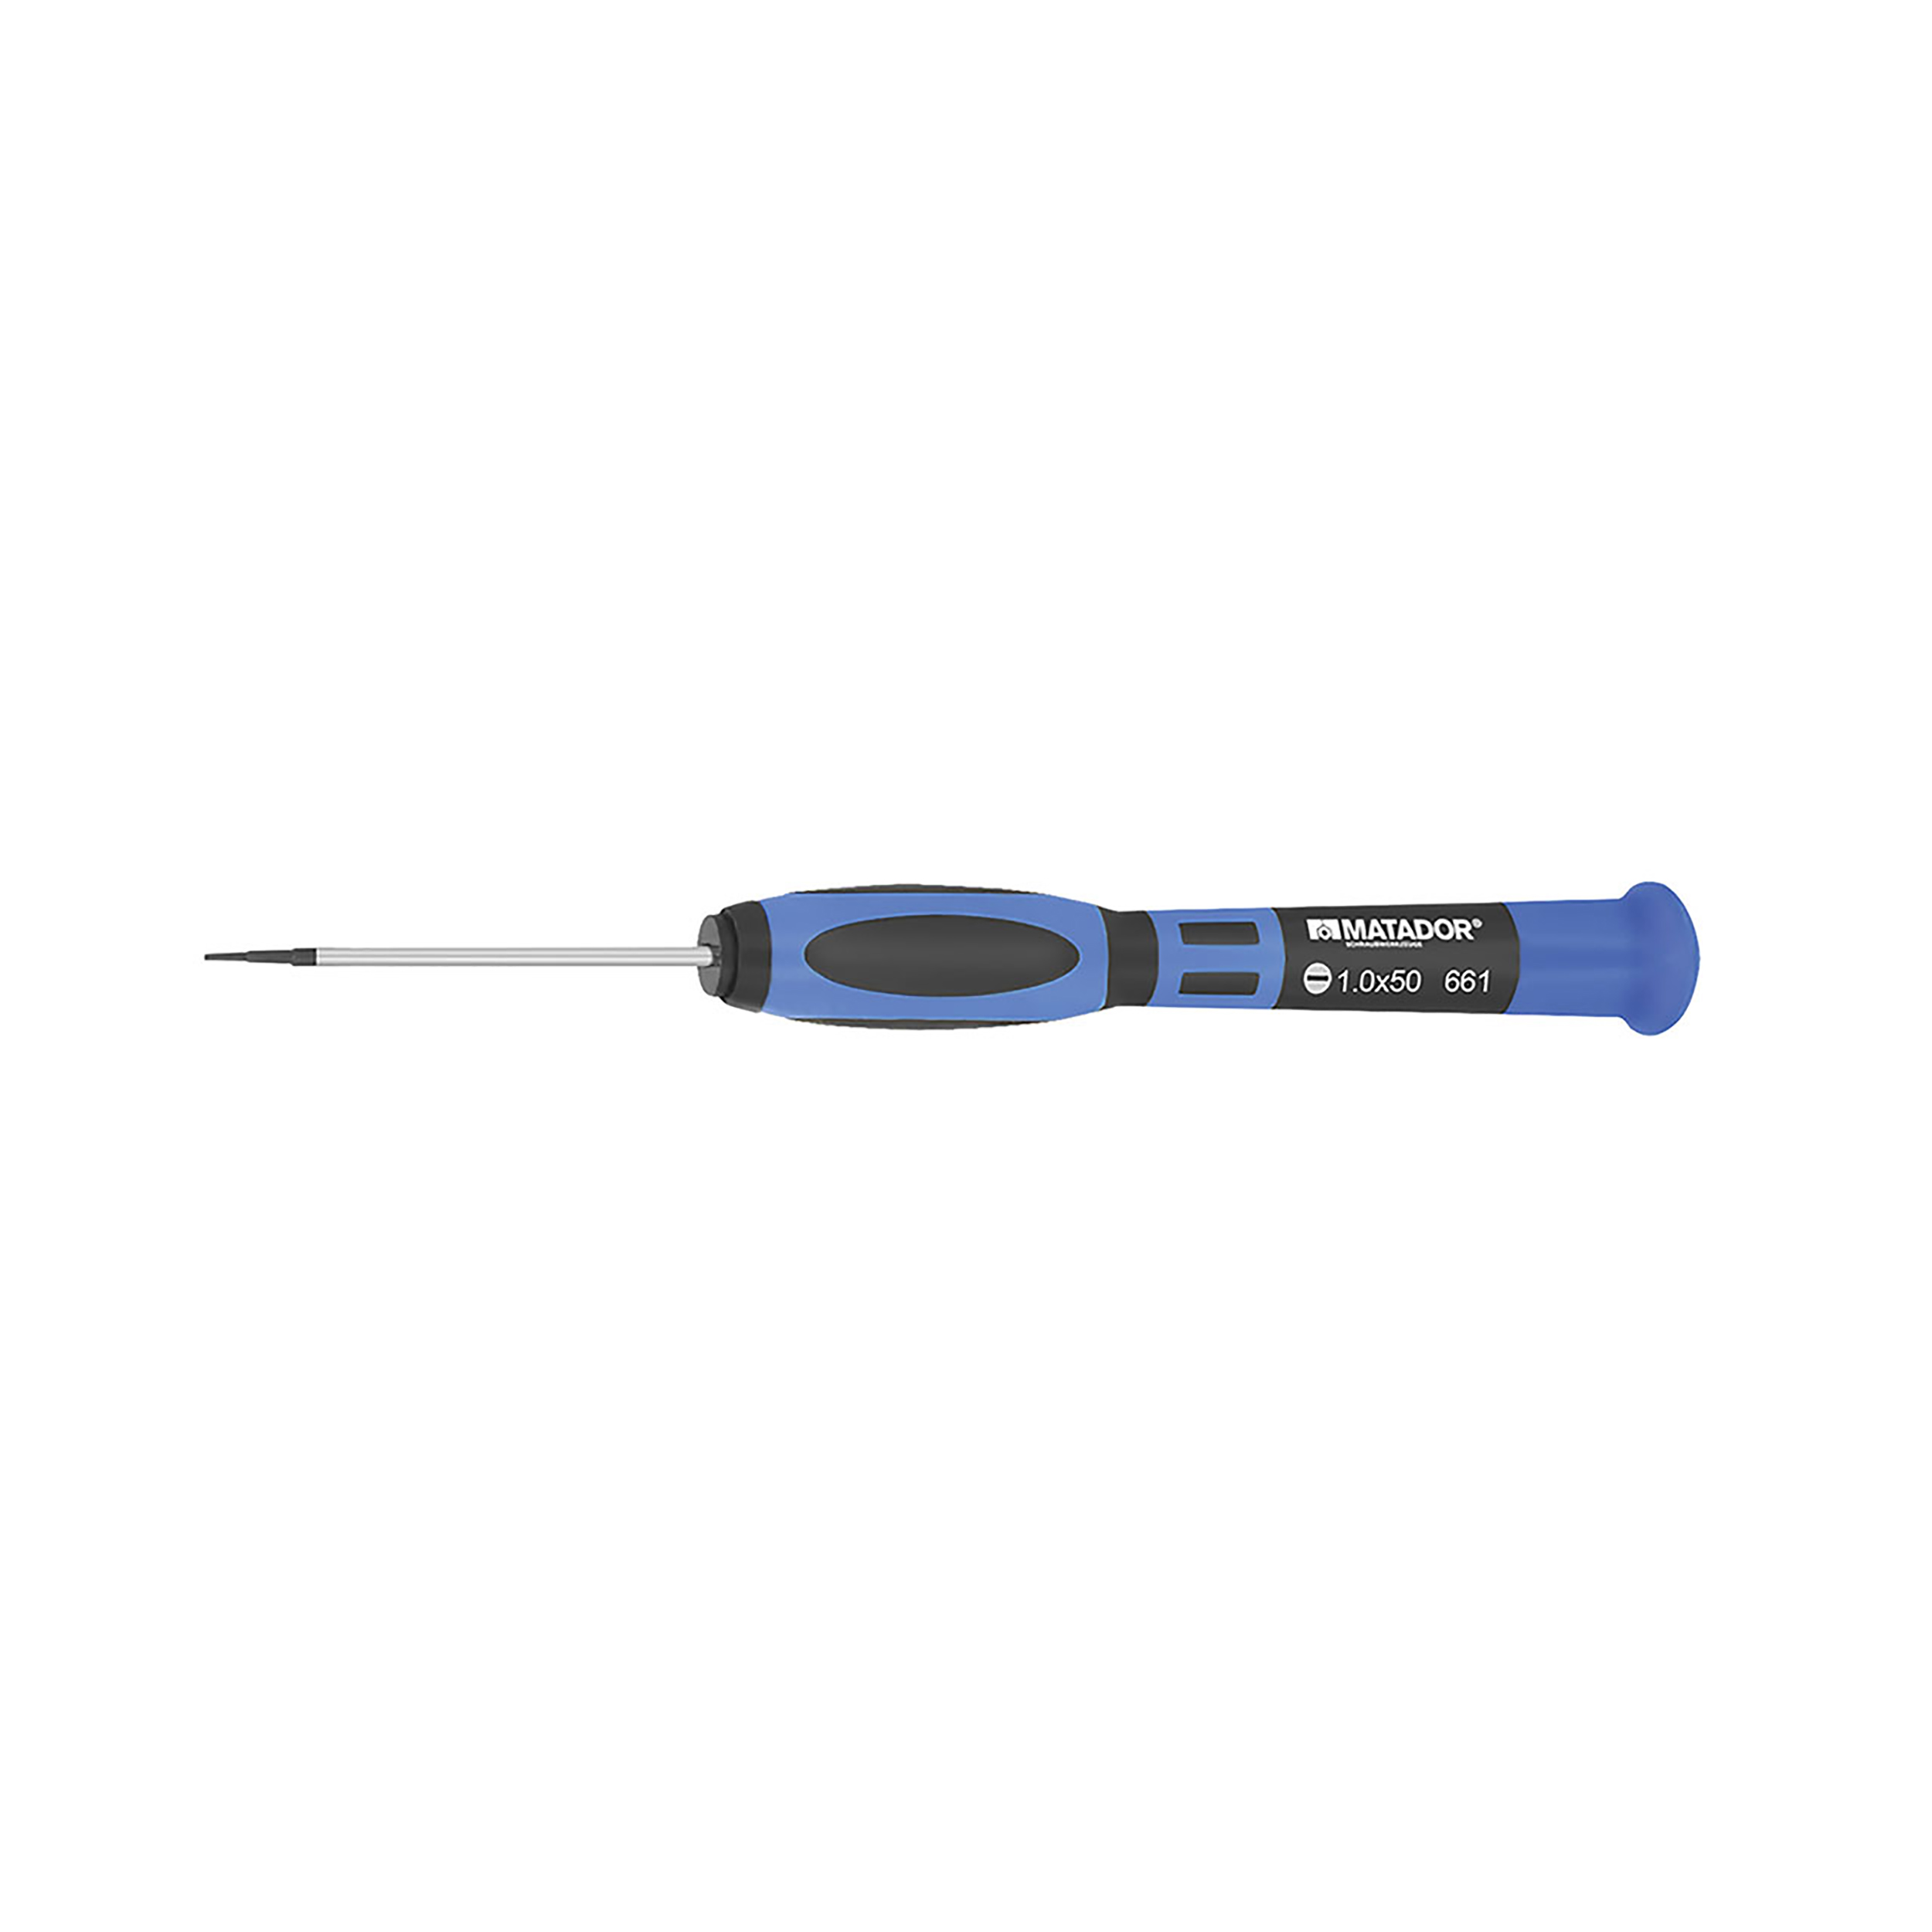 2C fine mechanics screwdriver, 0.25x1x50 mm, MATADOR item no.: 06610251